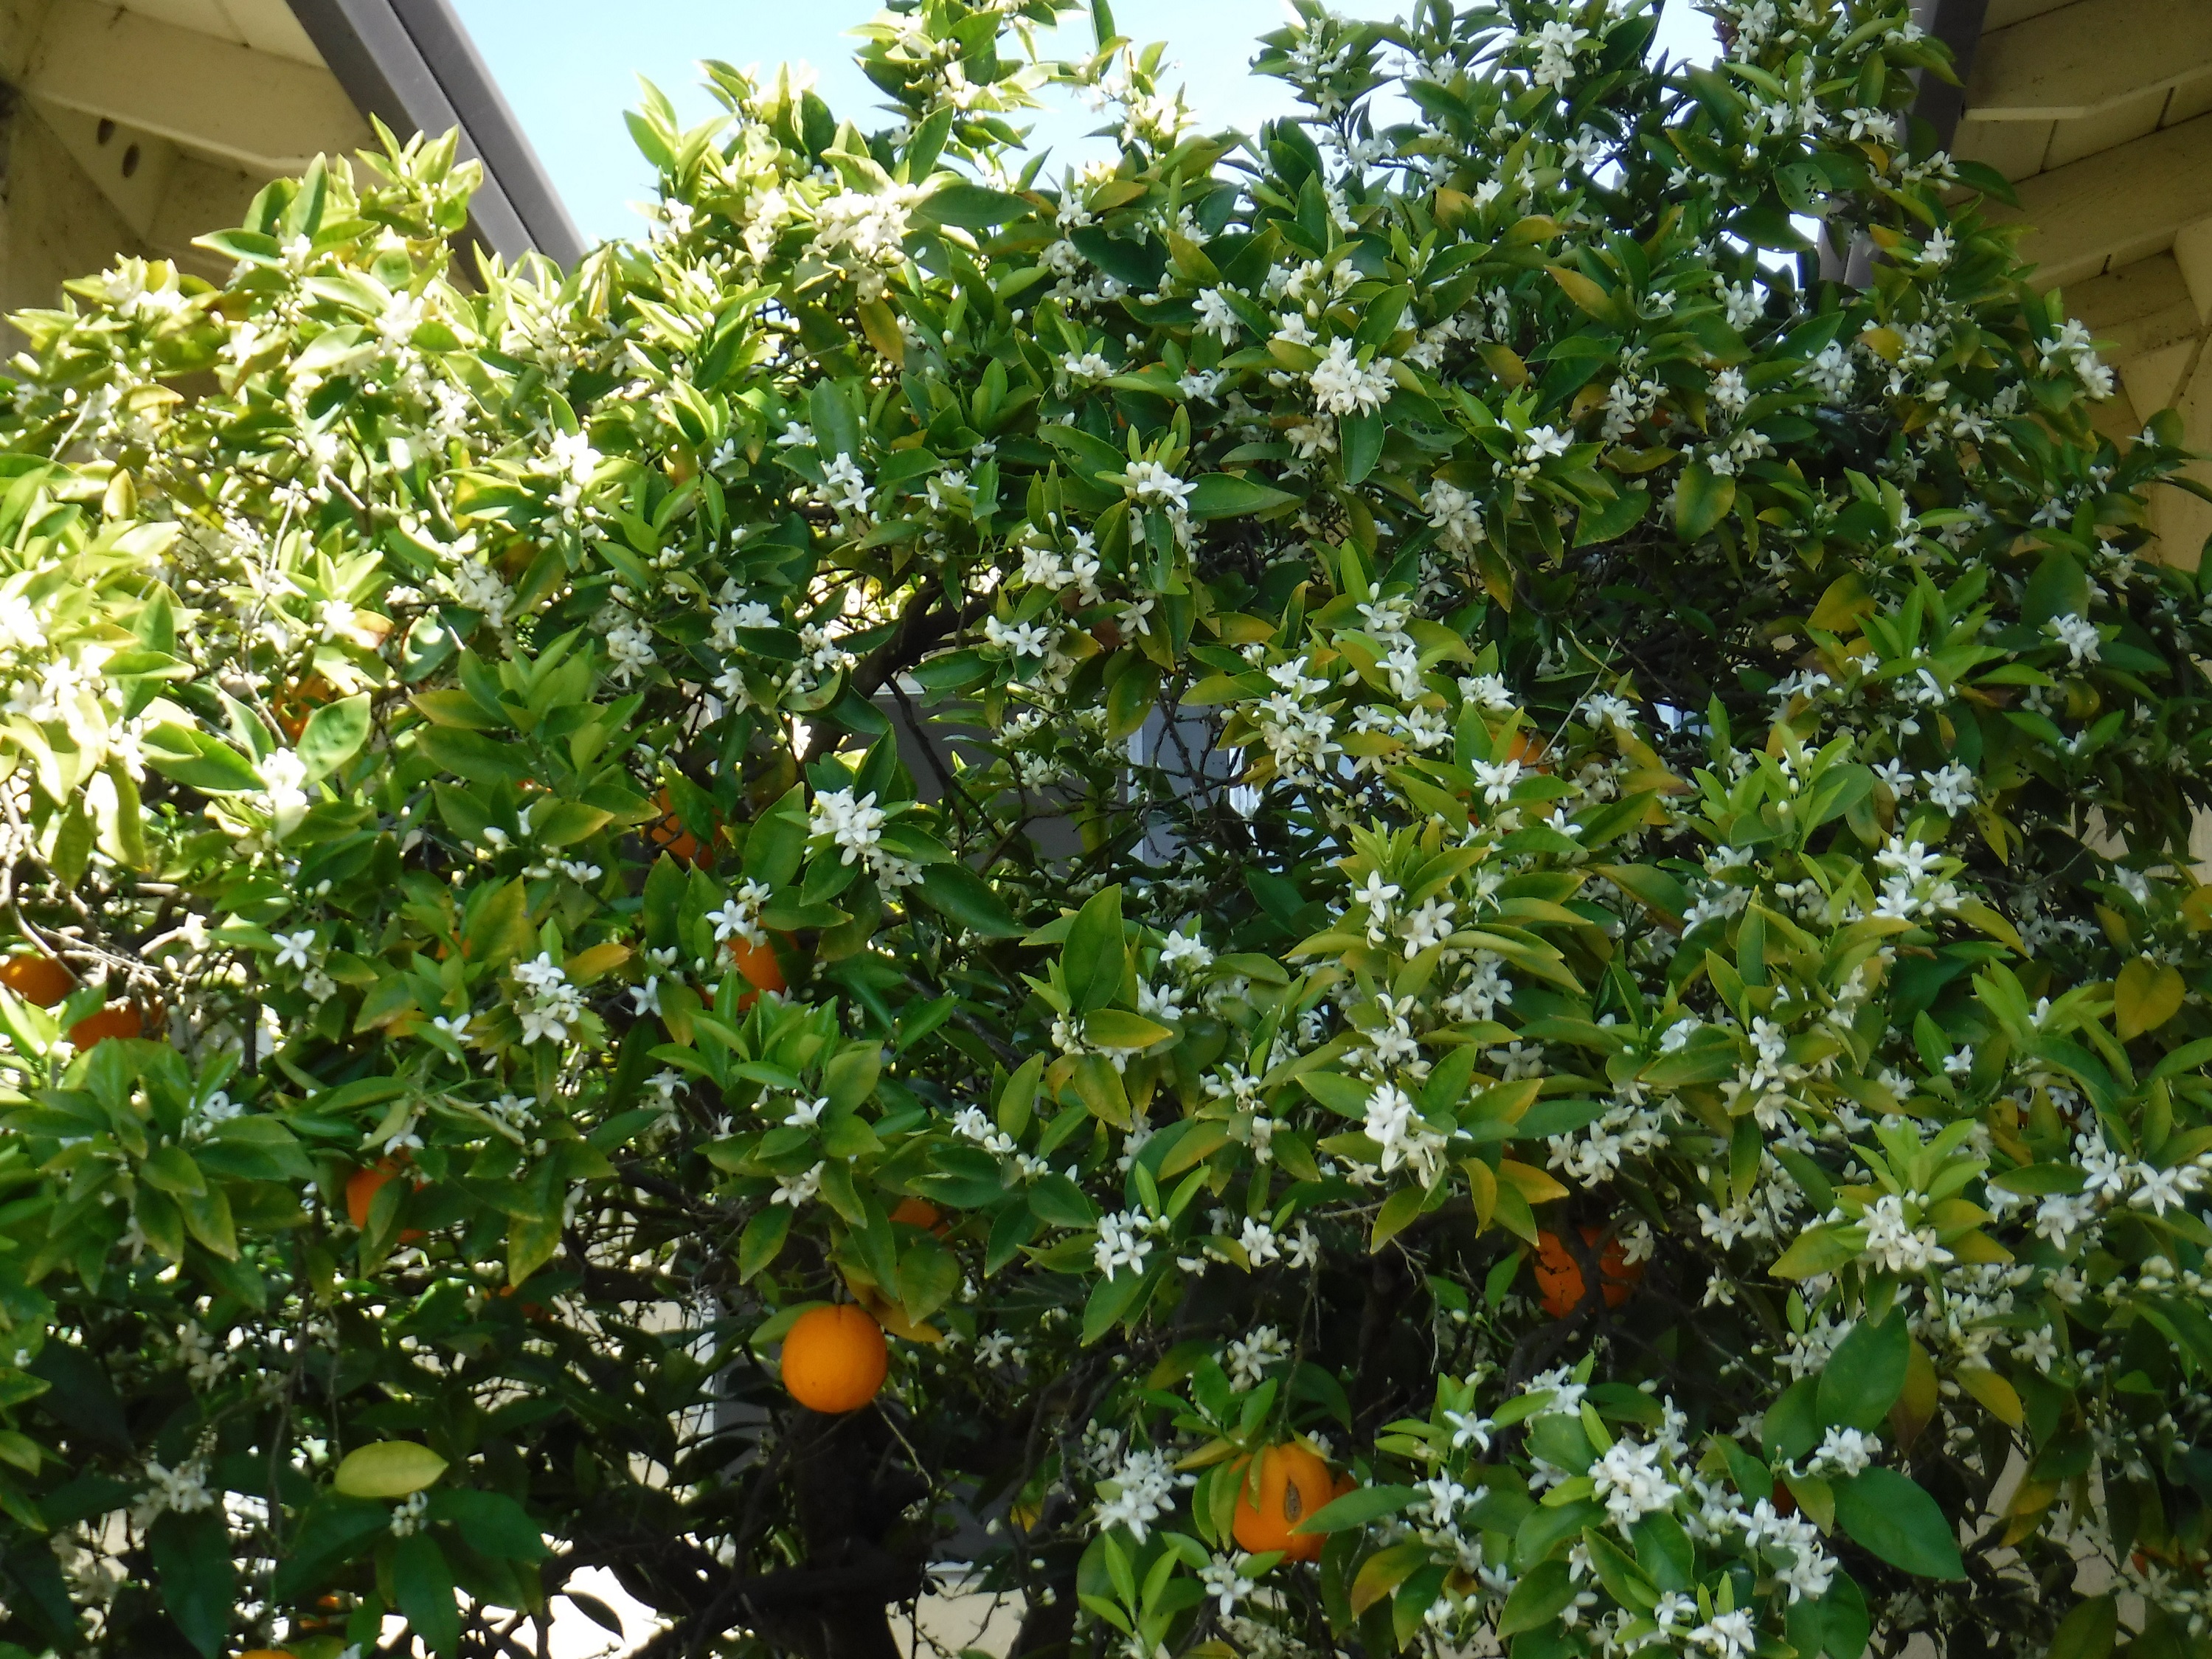 Photo I took of my orange tree